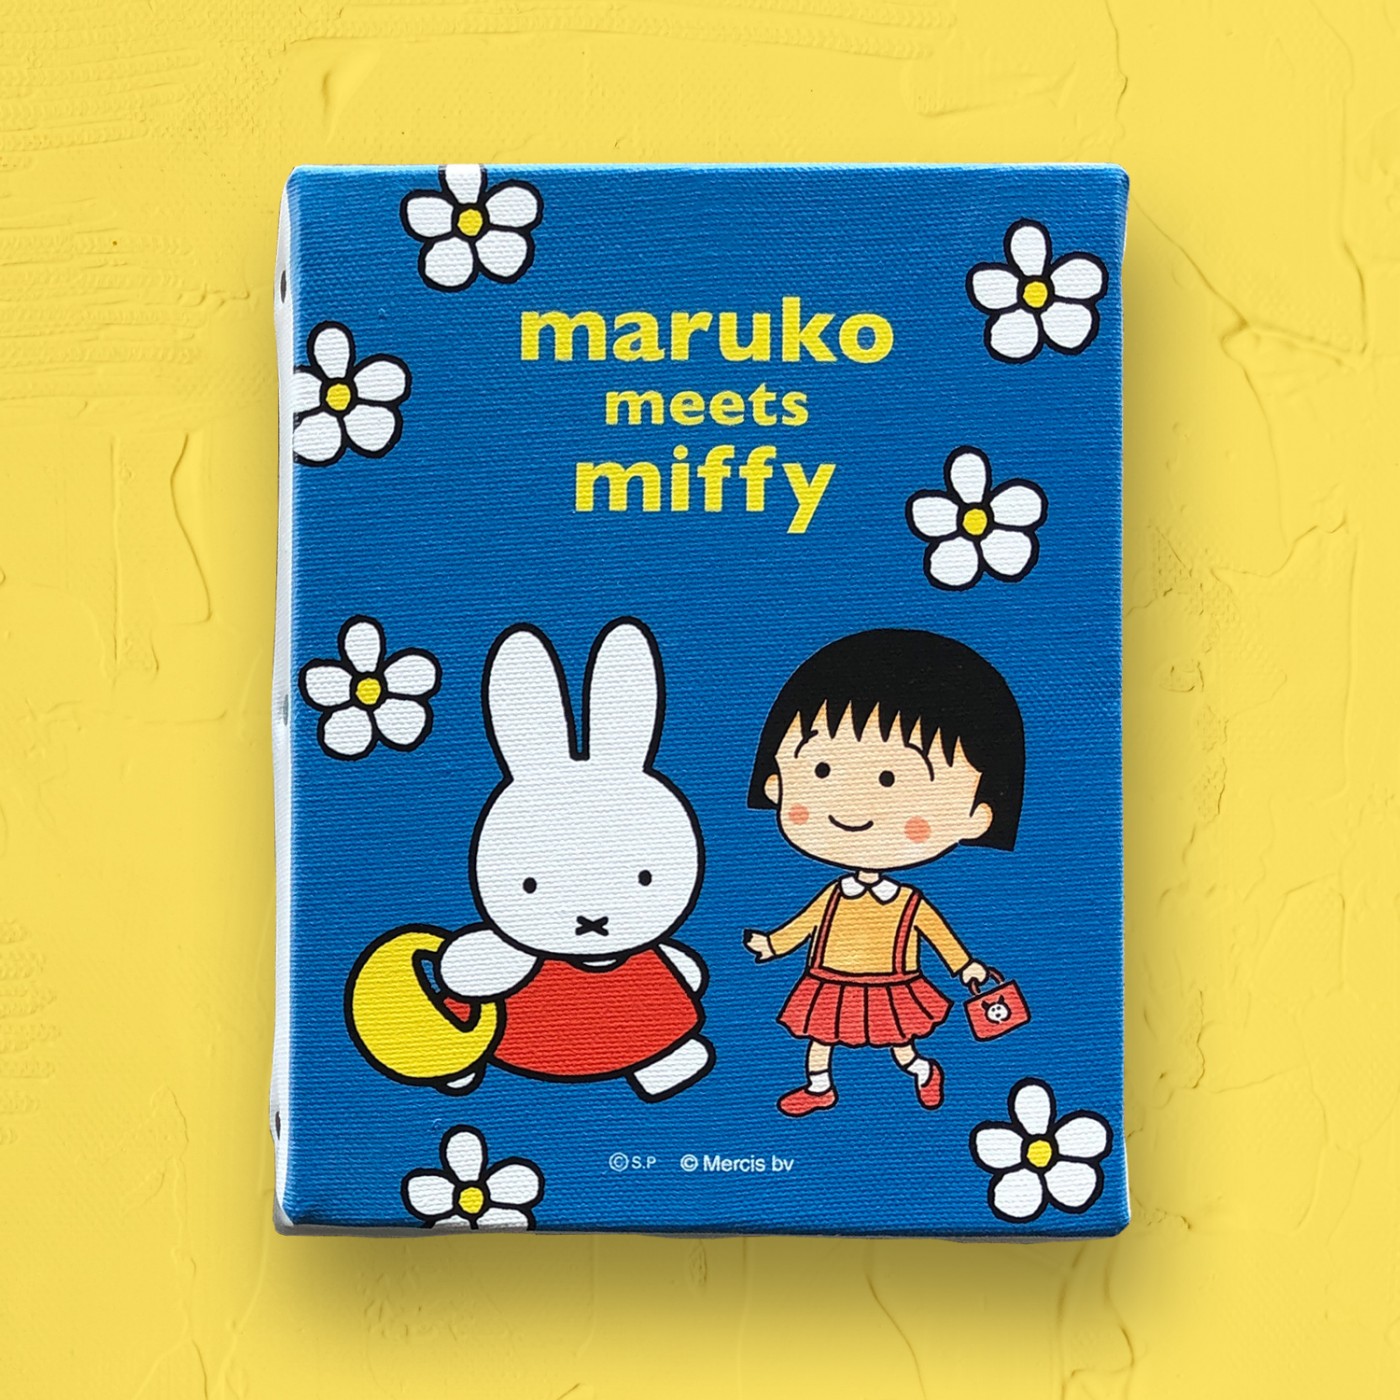 「ちびまる子ちゃん」と「ミッフィー」のコラボレーション「maruko meets miffy」